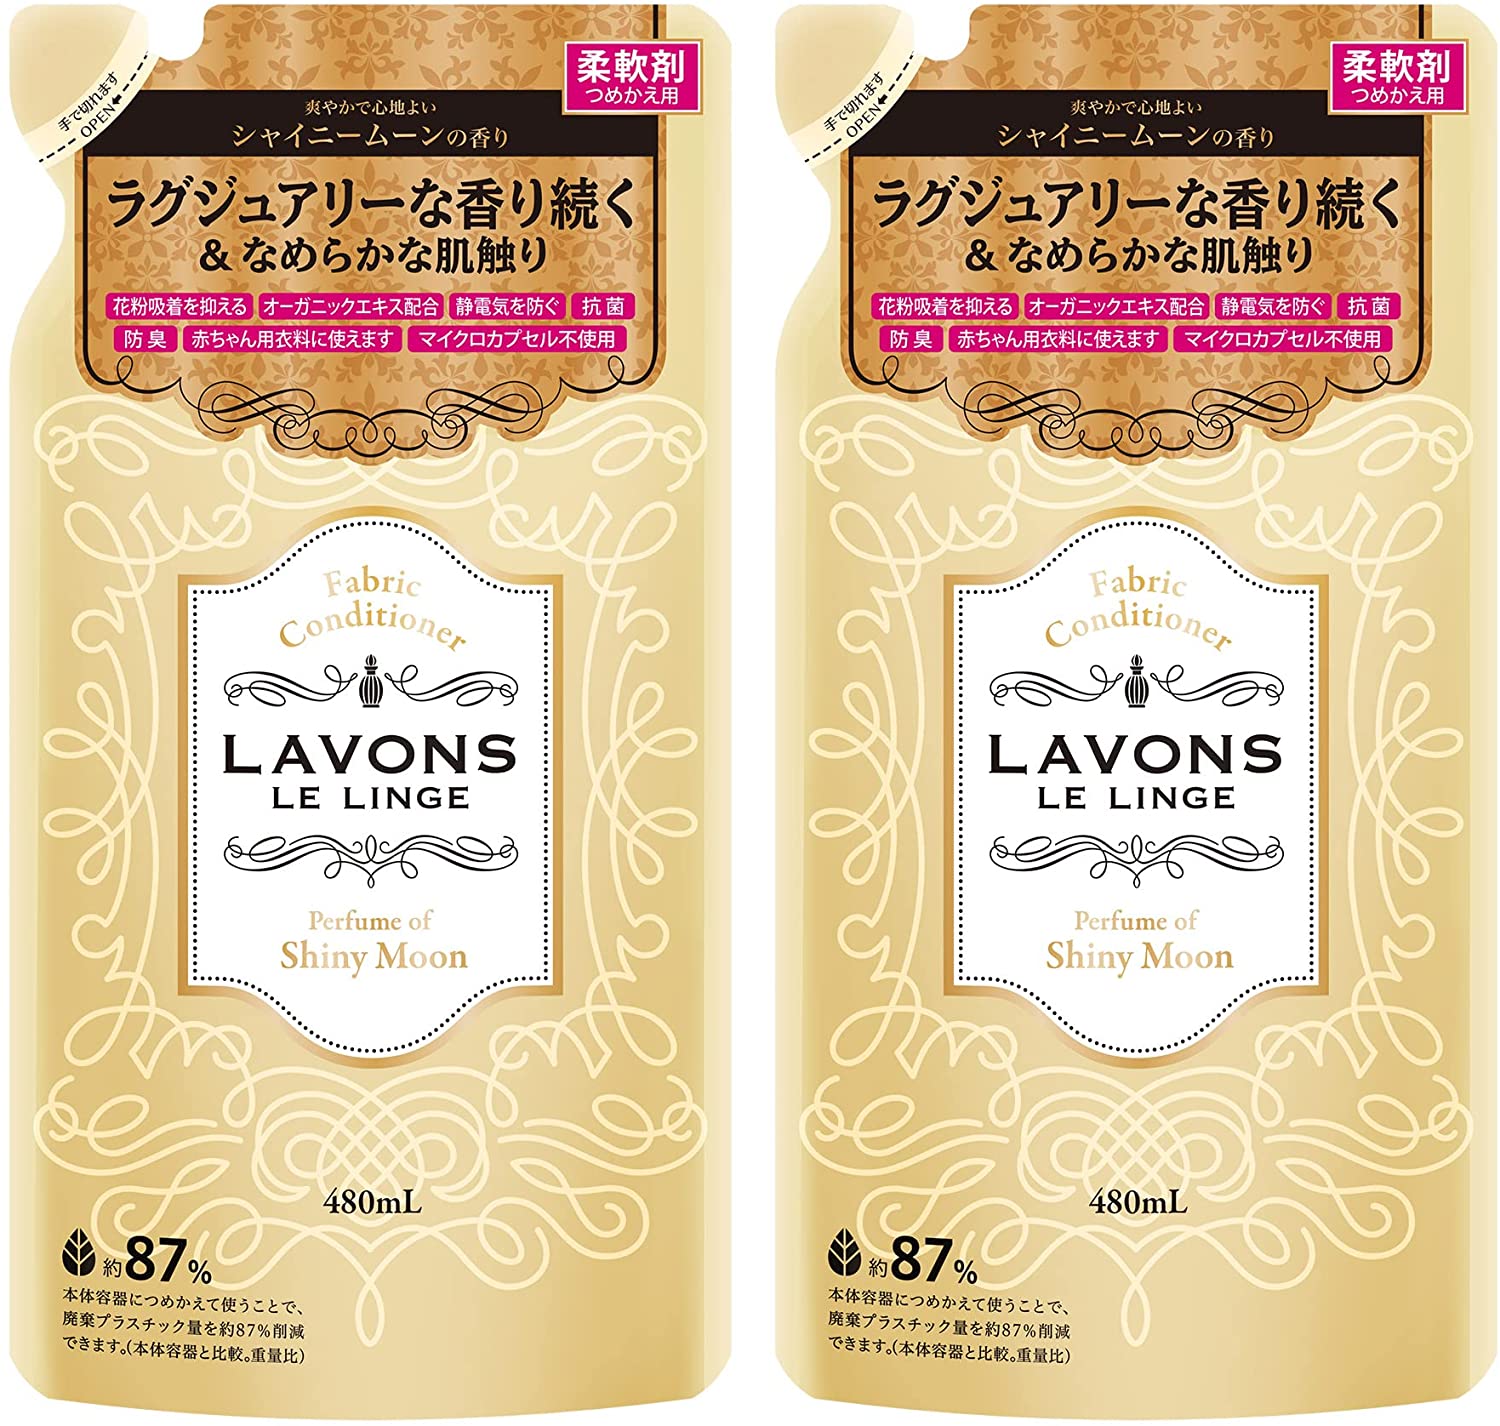 ラボン (Lavons) 柔軟剤詰替え ラグジュアリーフラワーの香り 2個